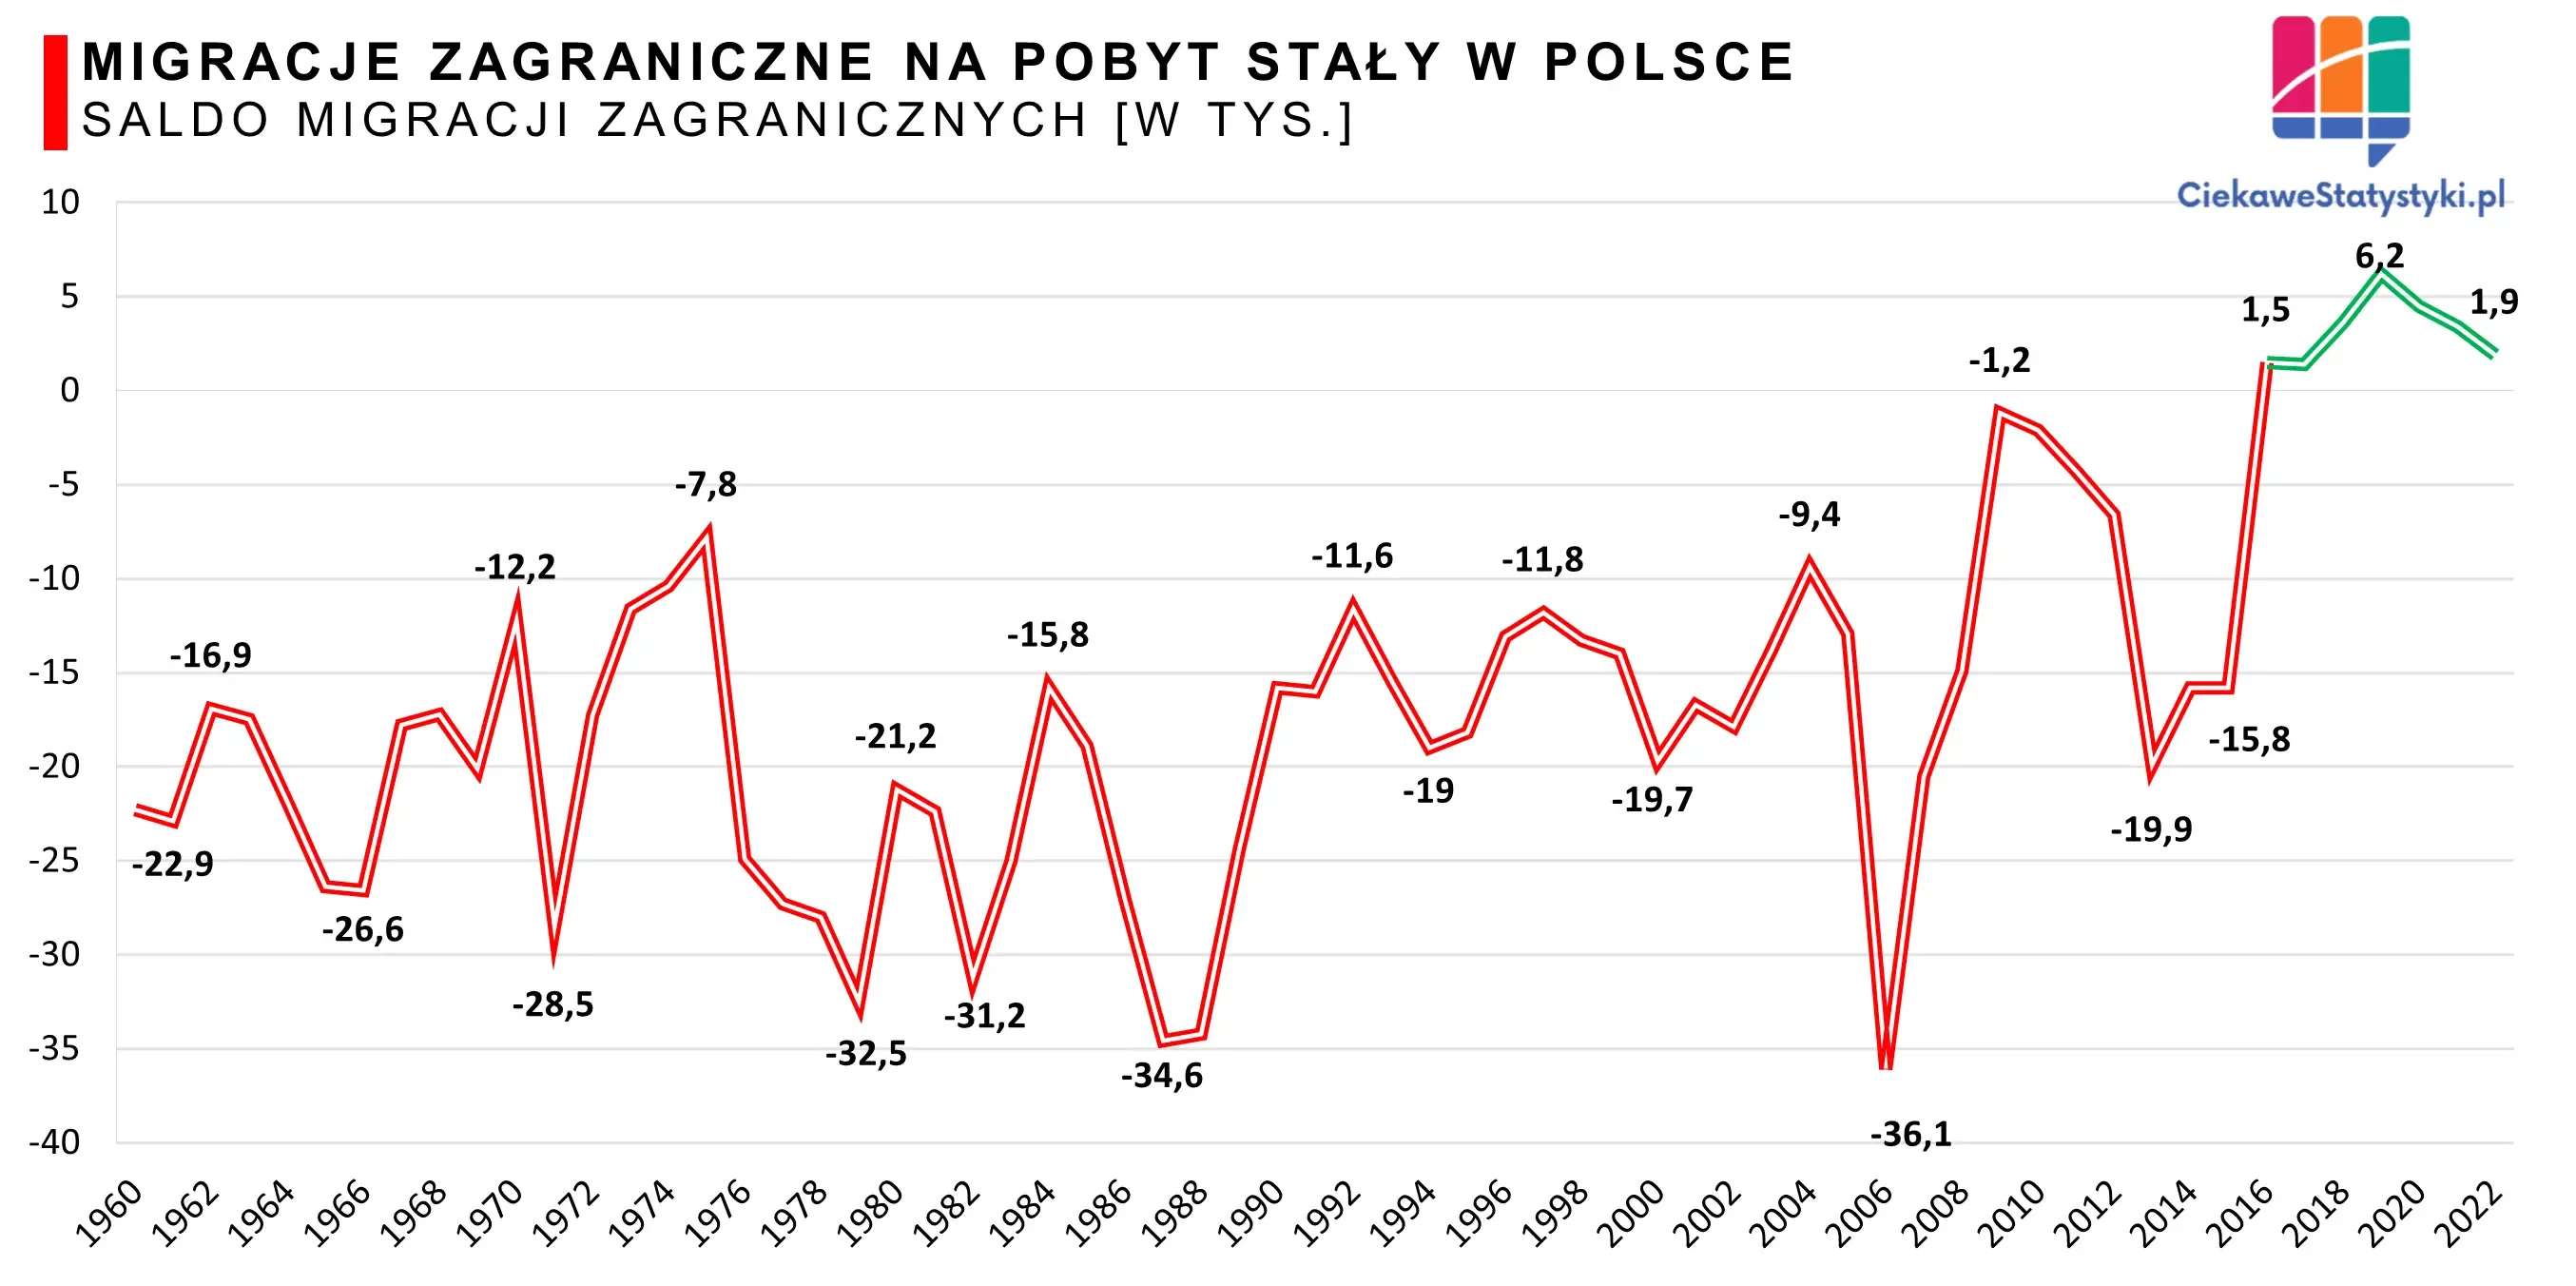 Wykres pokazuje saldo migracji zagranicznych w Polsce na przestrzeni lat